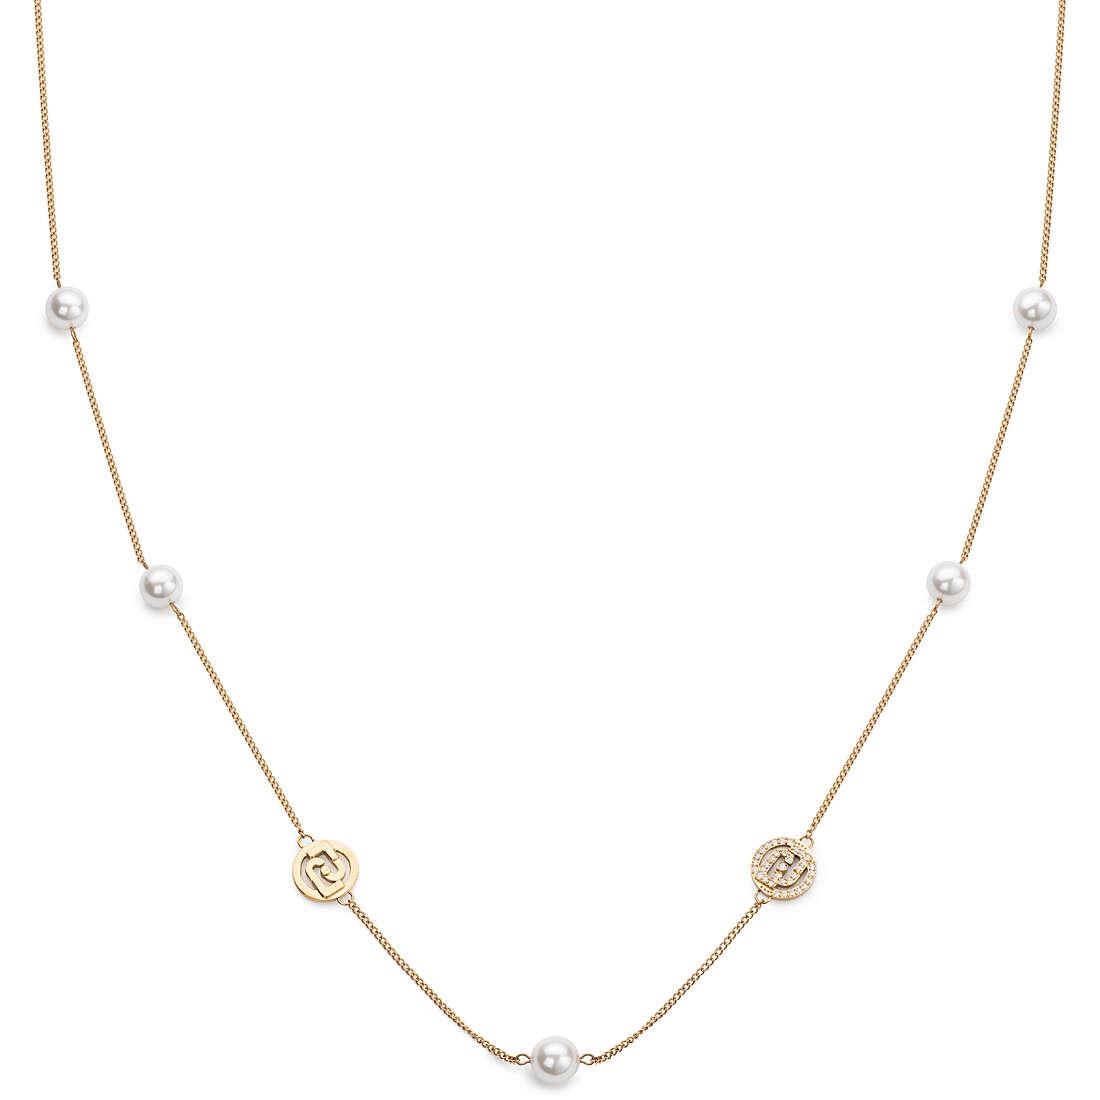 Liu Jo Dlouhý pozlacený náhrdelník s perlami a logy Fashion LJ2095